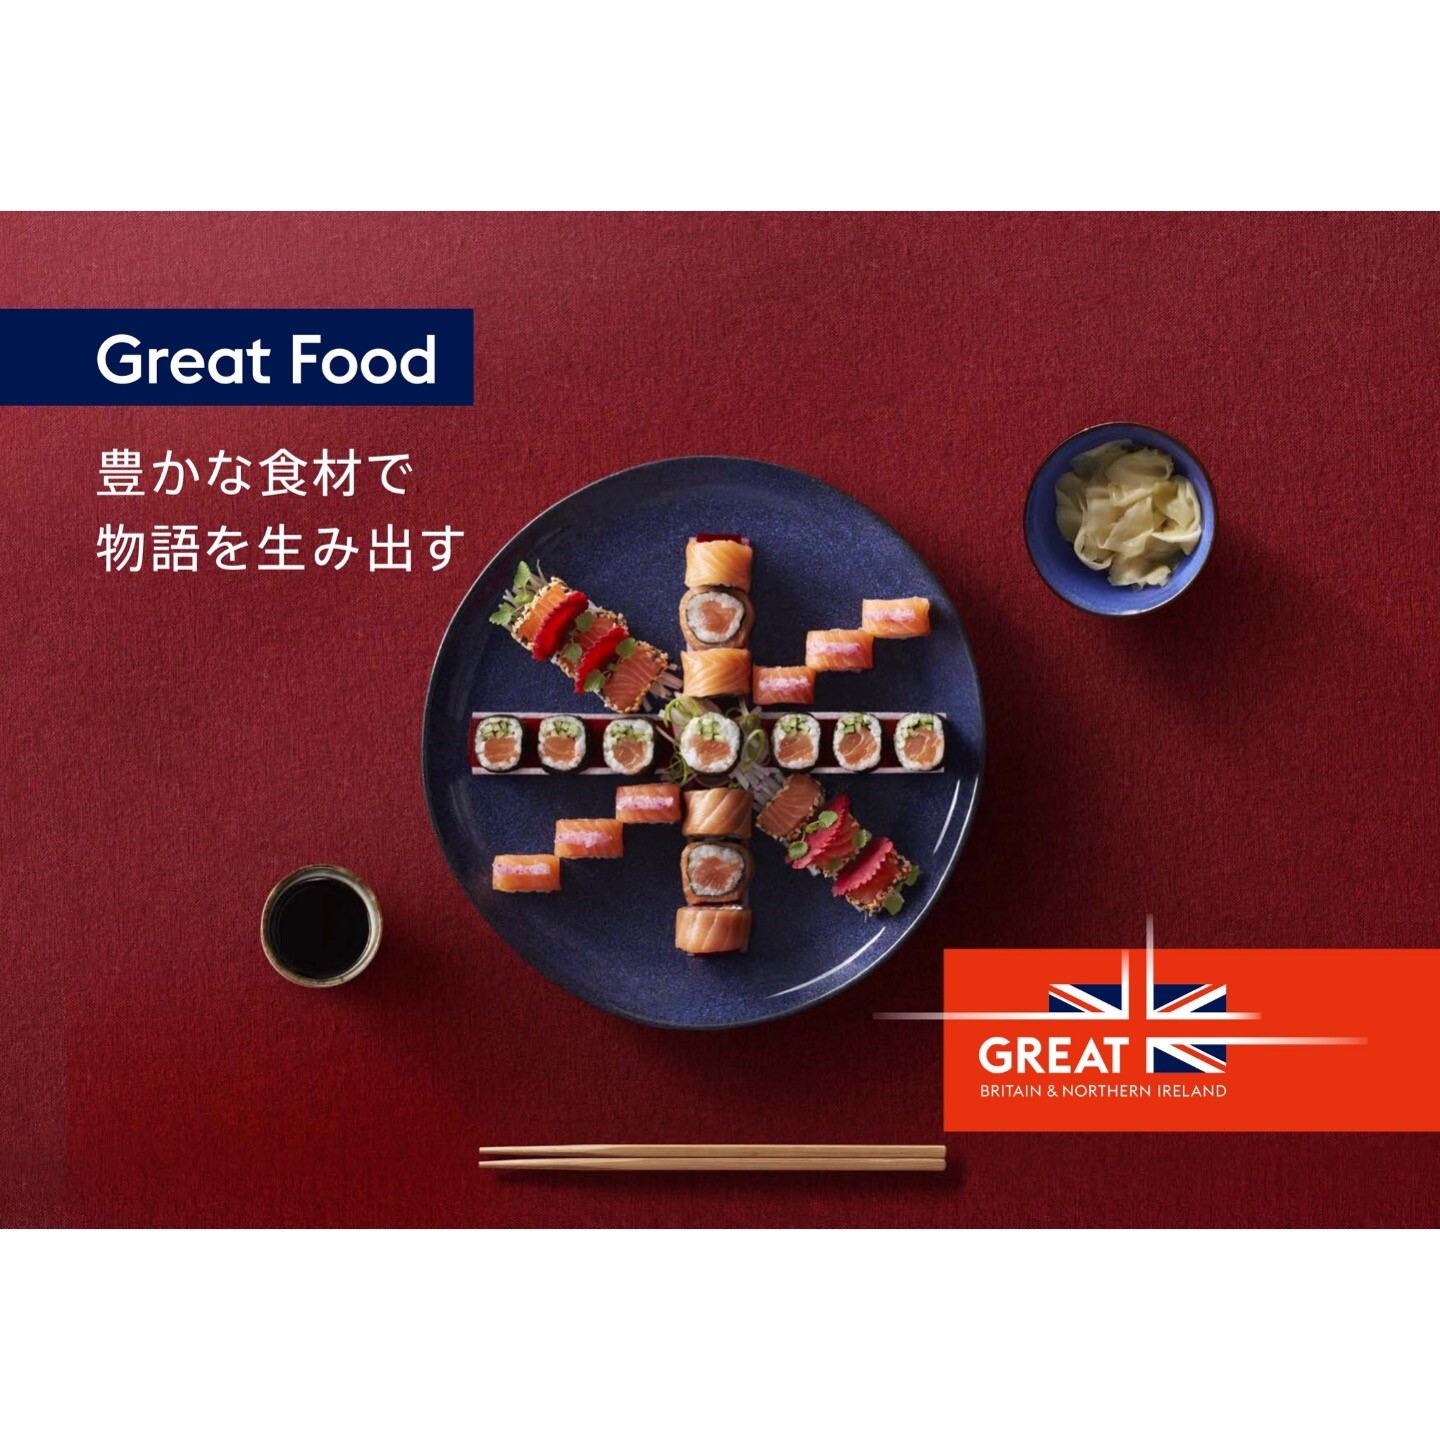 “英国の新たな魅力は「食」にある！”
英国大使館にて開催される『GREAT FOOD DISCOVERY』
キャンペーンのお知らせ